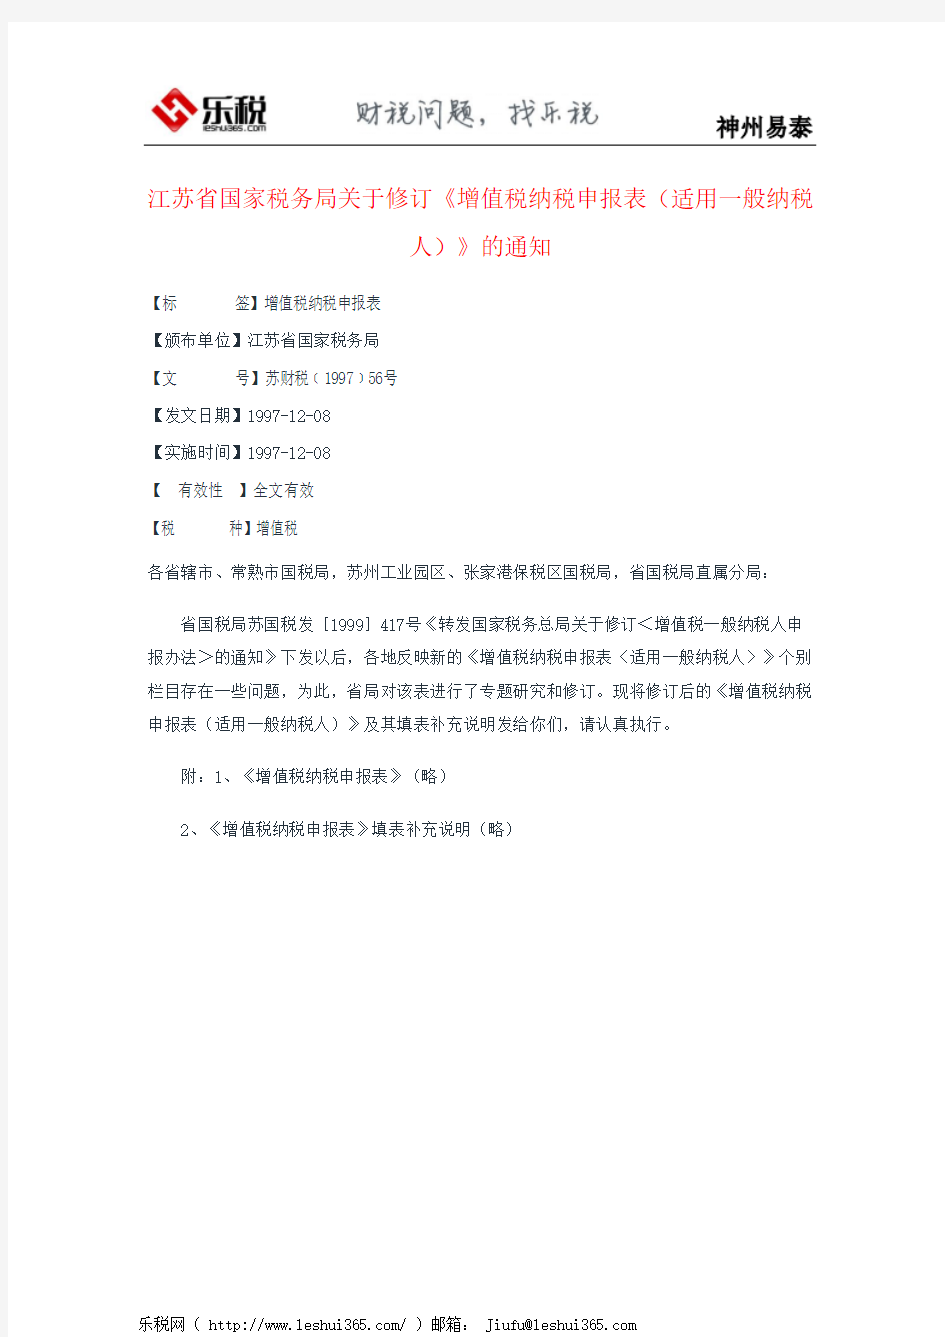 江苏省国家税务局关于修订《增值税纳税申报表(适用一般纳税人)